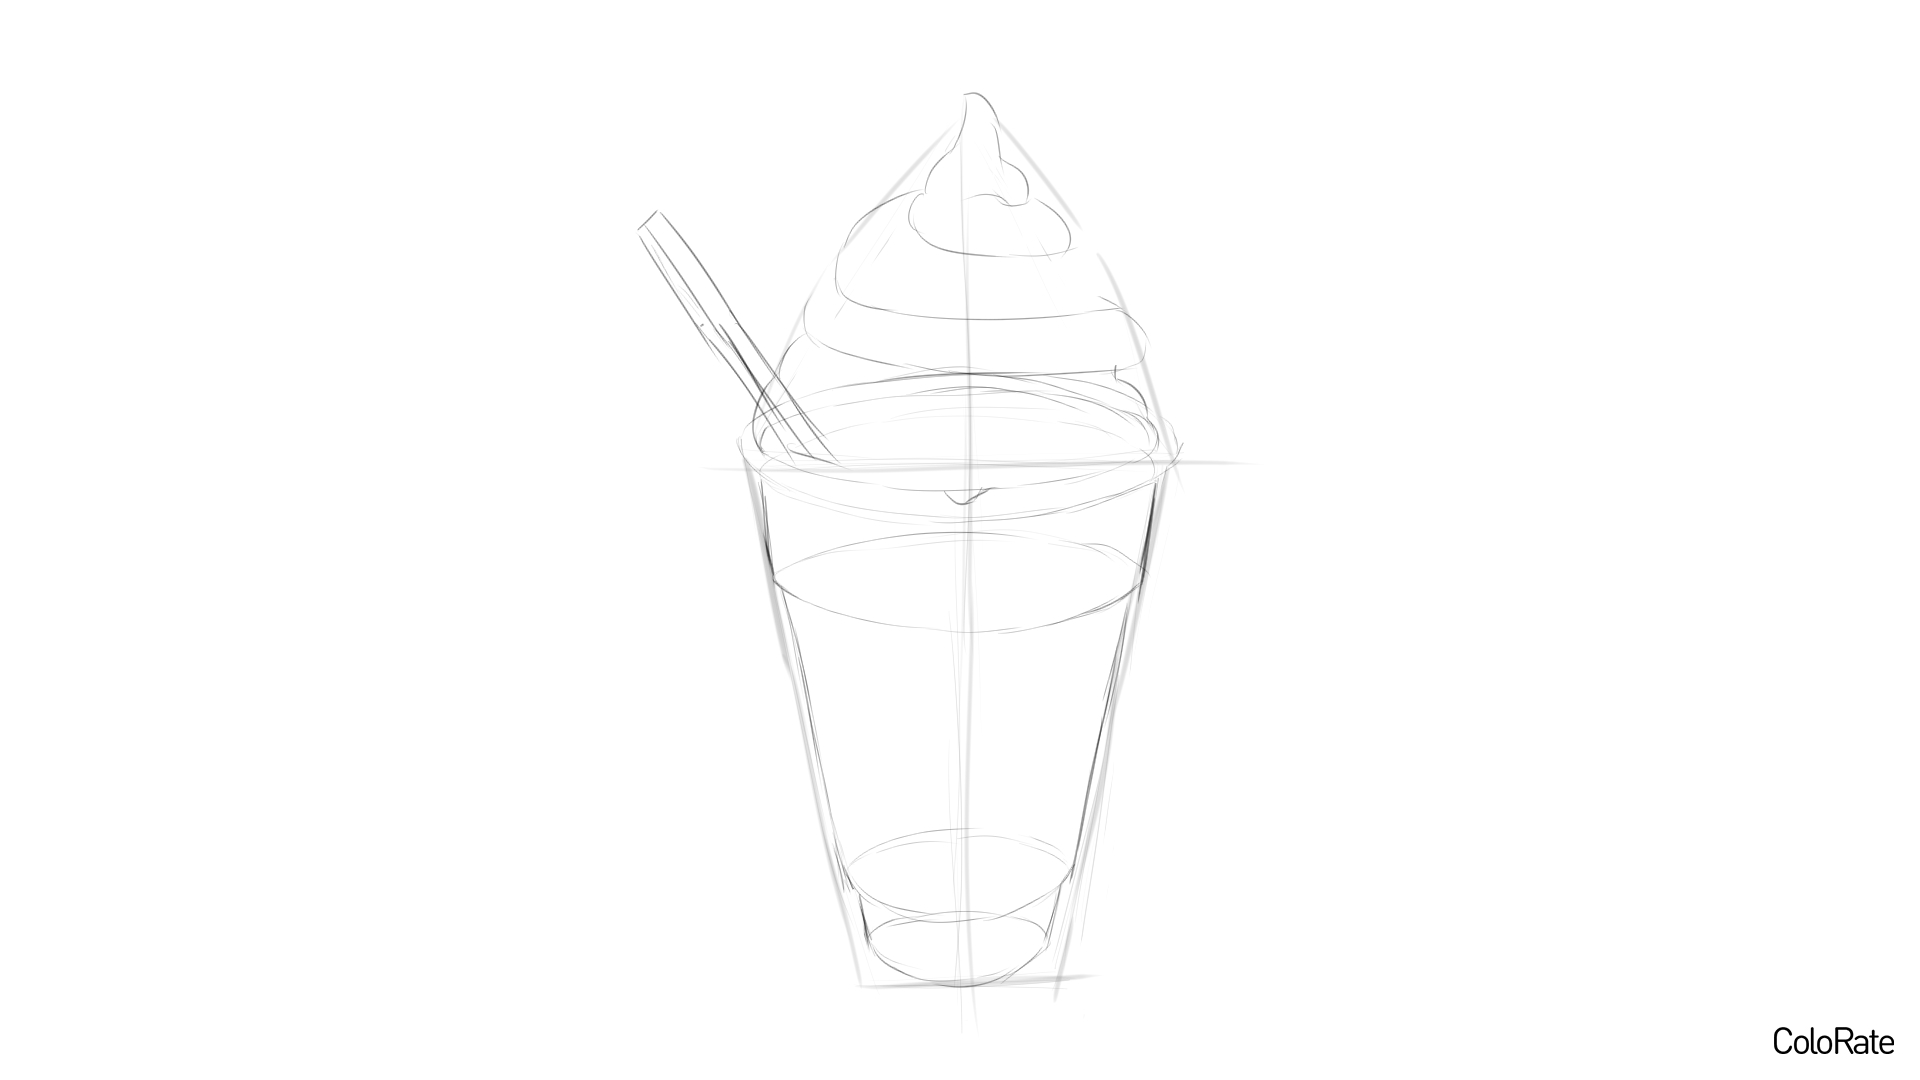 Карандашный рисунок мороженого - шаг 3 - набросок стаканчика с мороженым